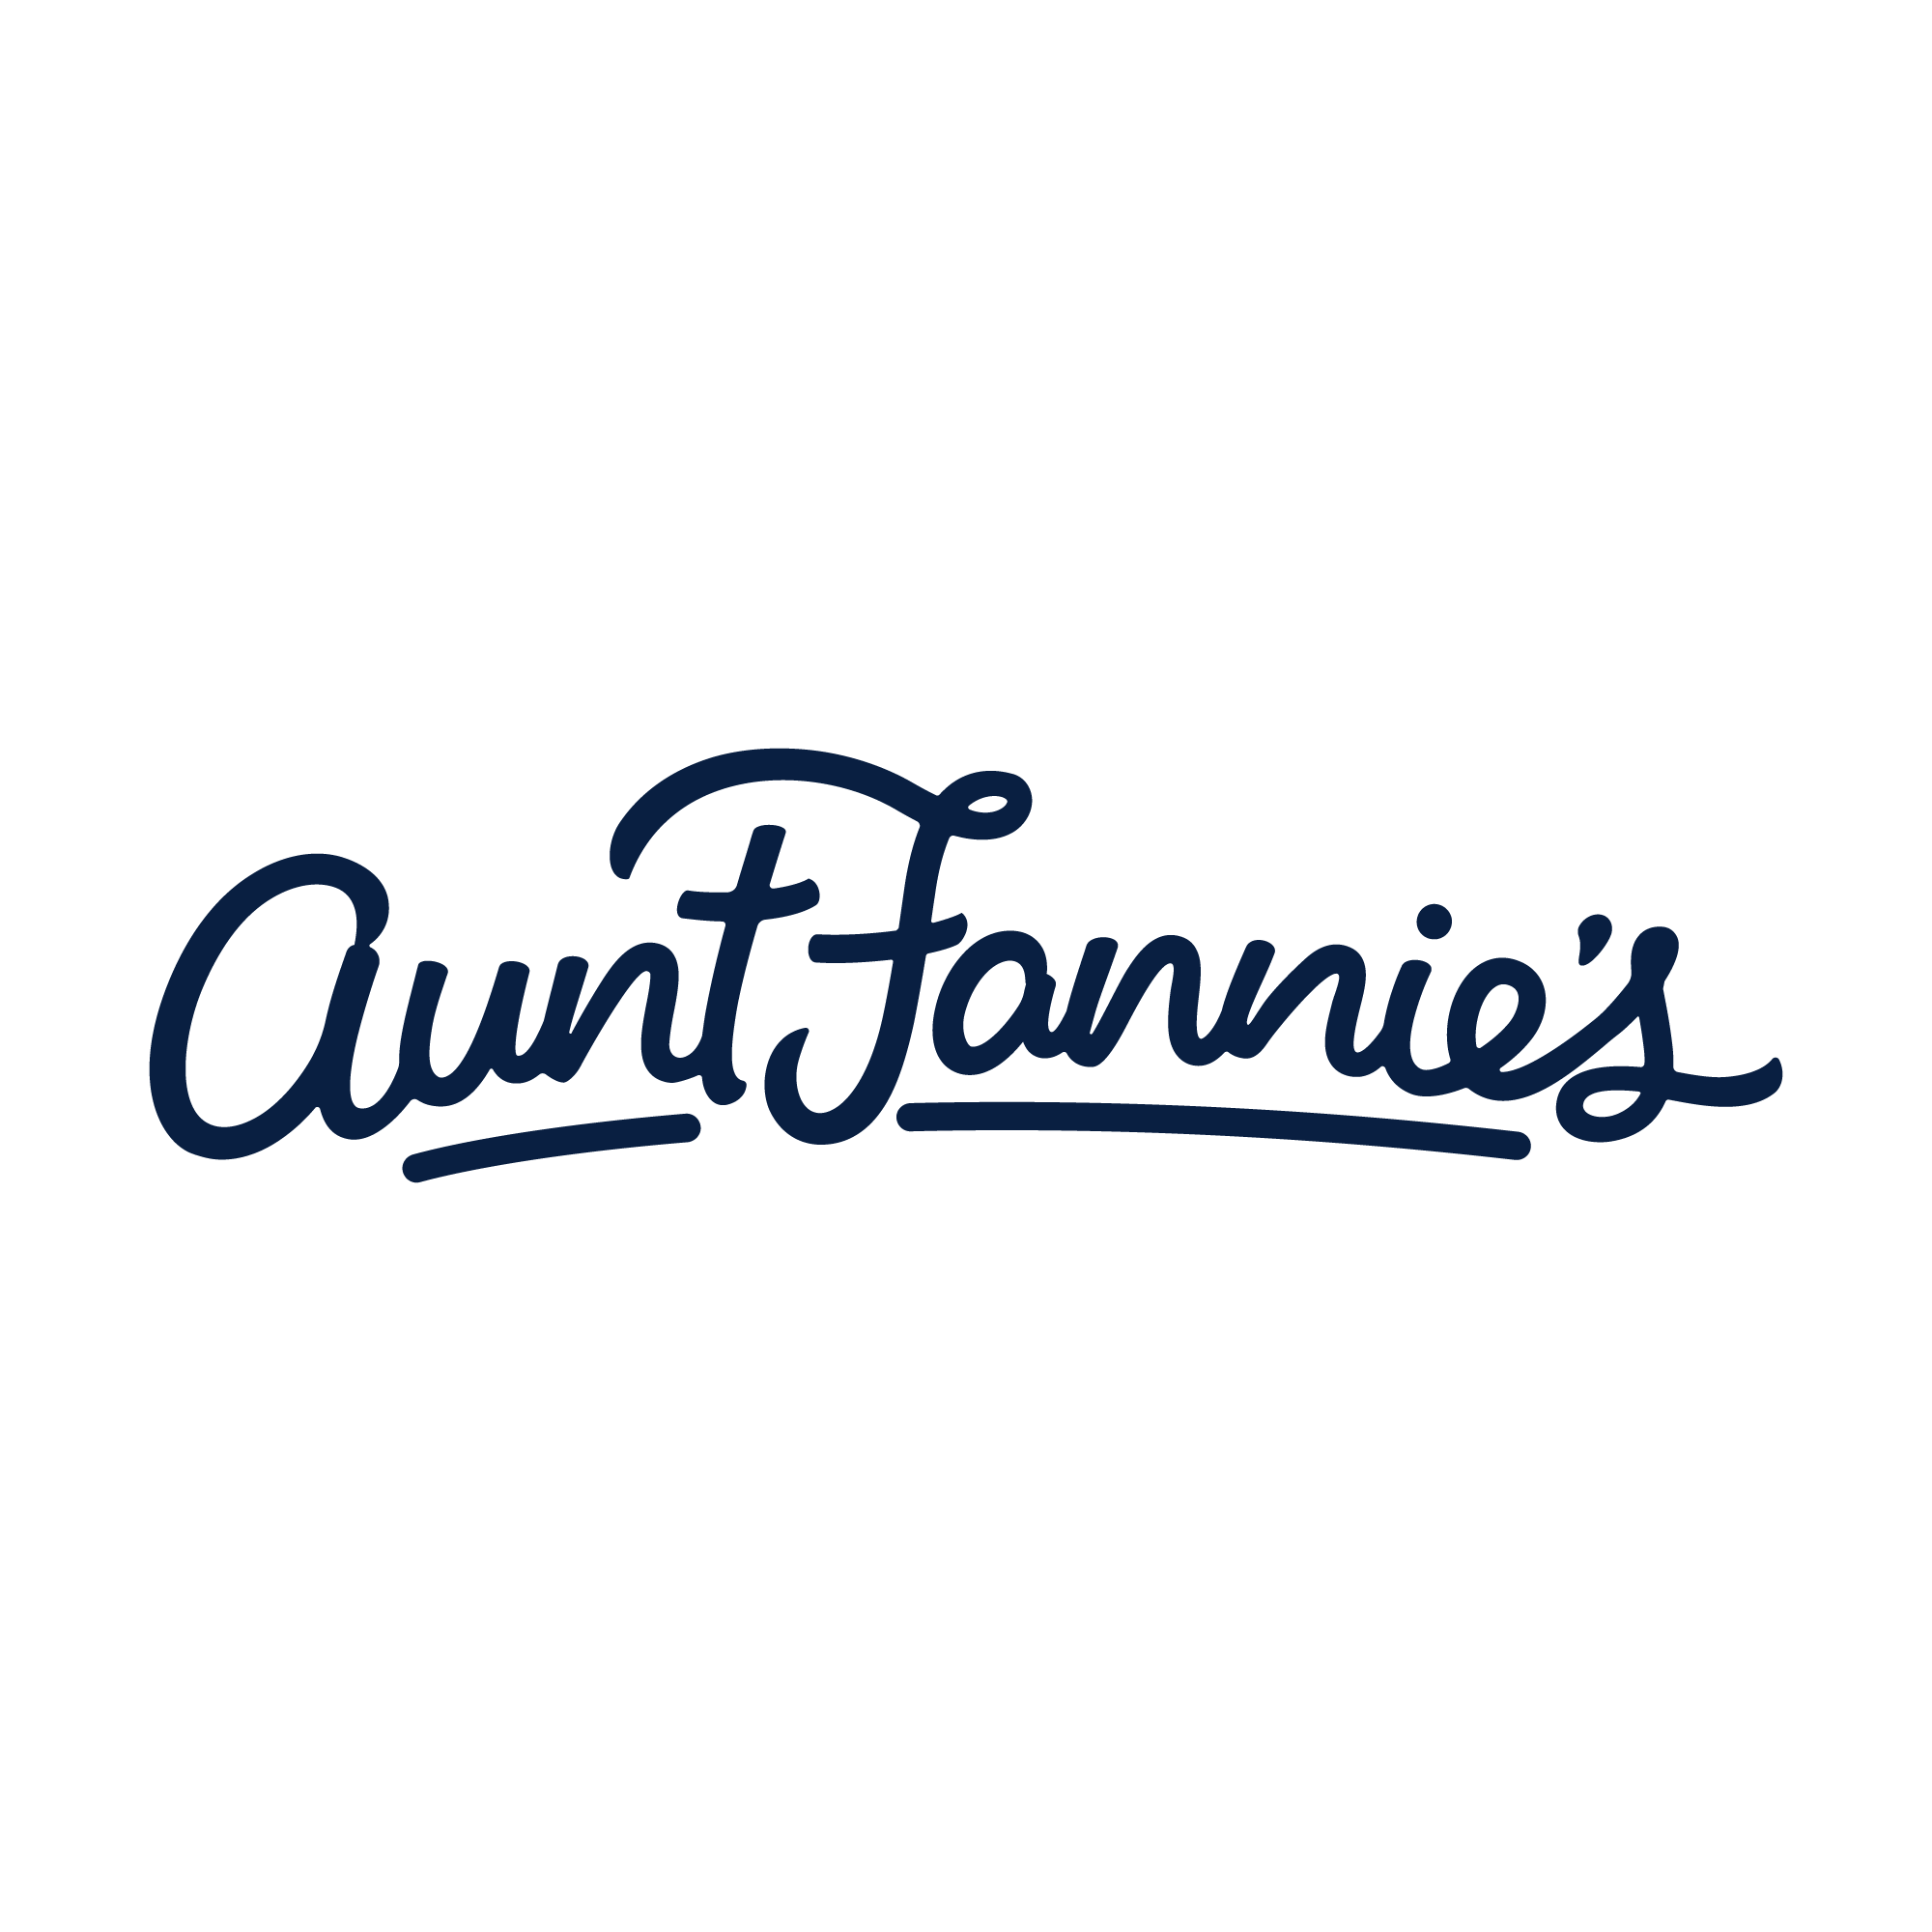 https://auntfannies.com/wp-content/themes/auntfannies/lib/images/logos/social-logo.png